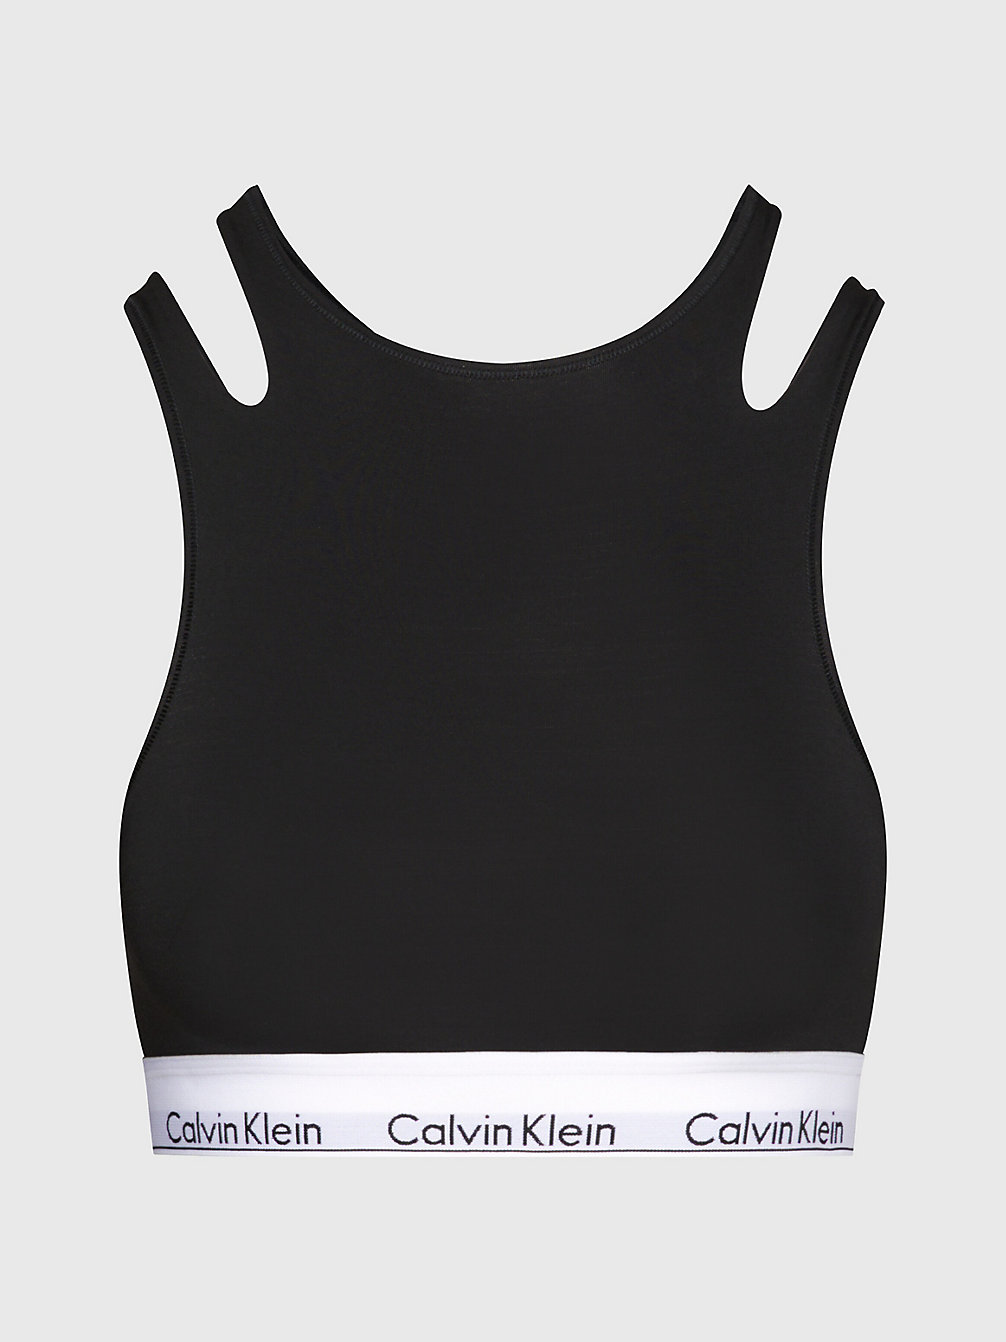 BLACK Bralette - CK Deconstructed undefined women Calvin Klein